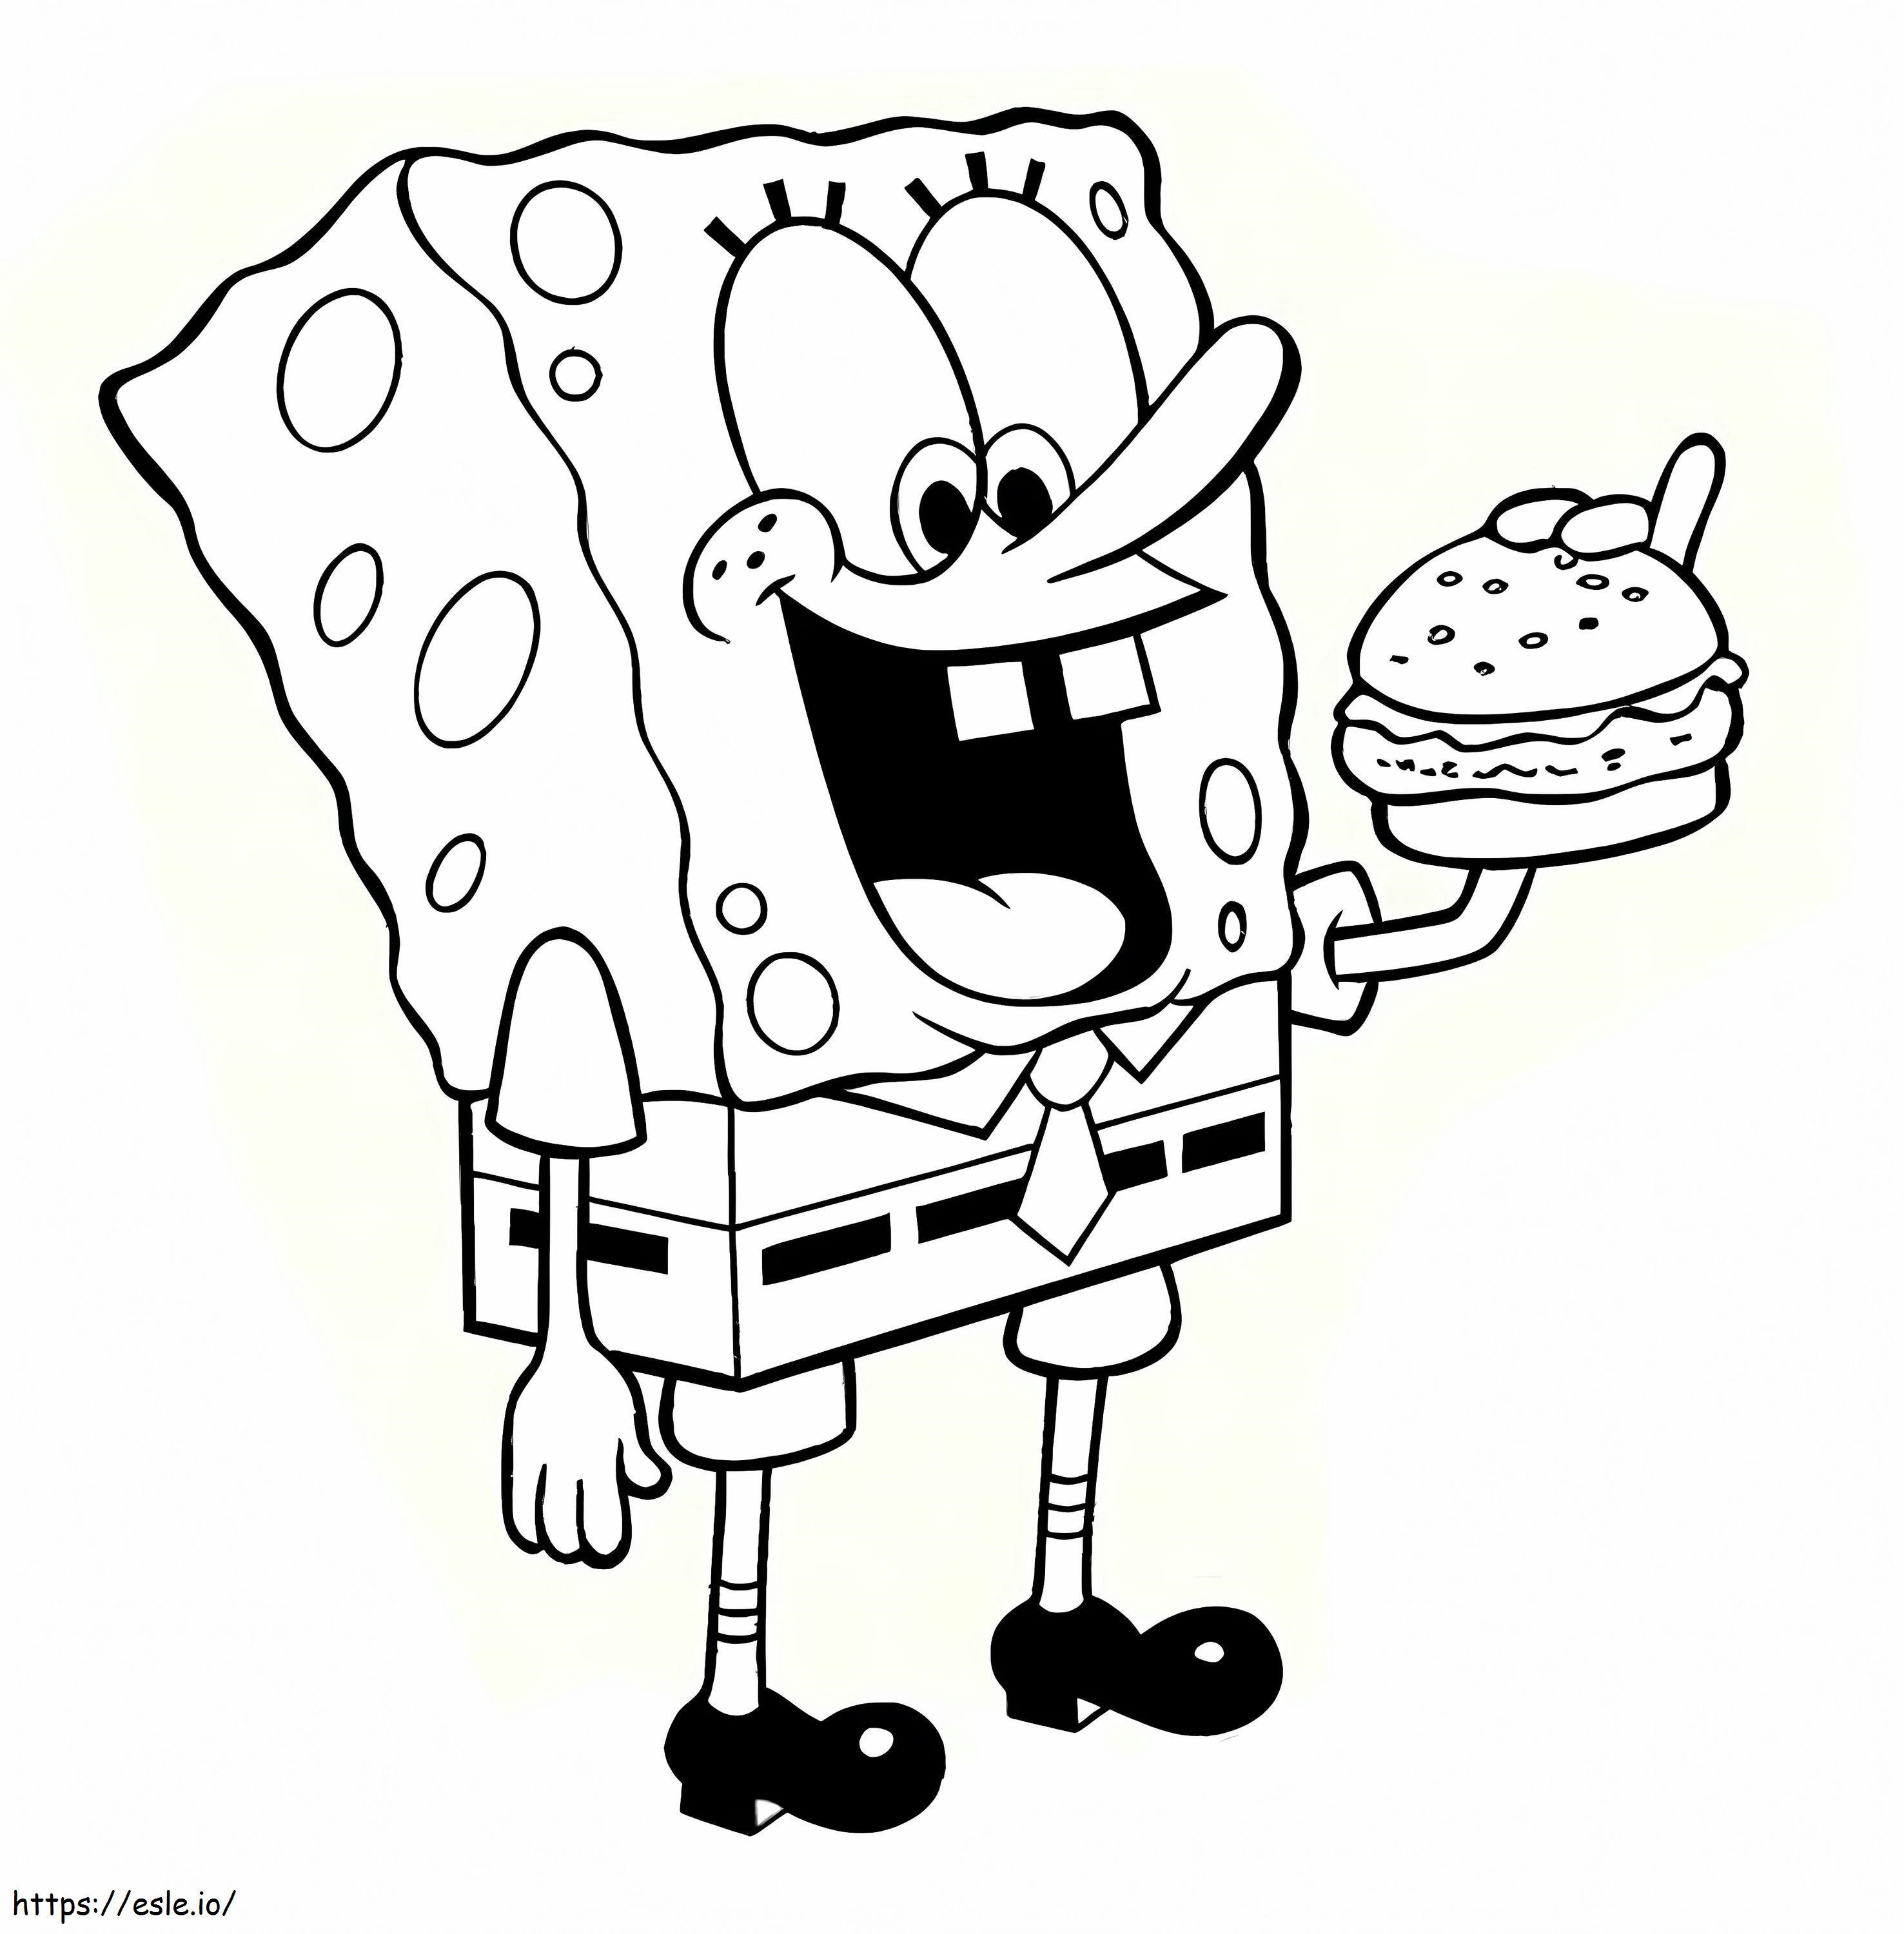 1532661164 Spongebob Eating Hamburger A4 coloring page